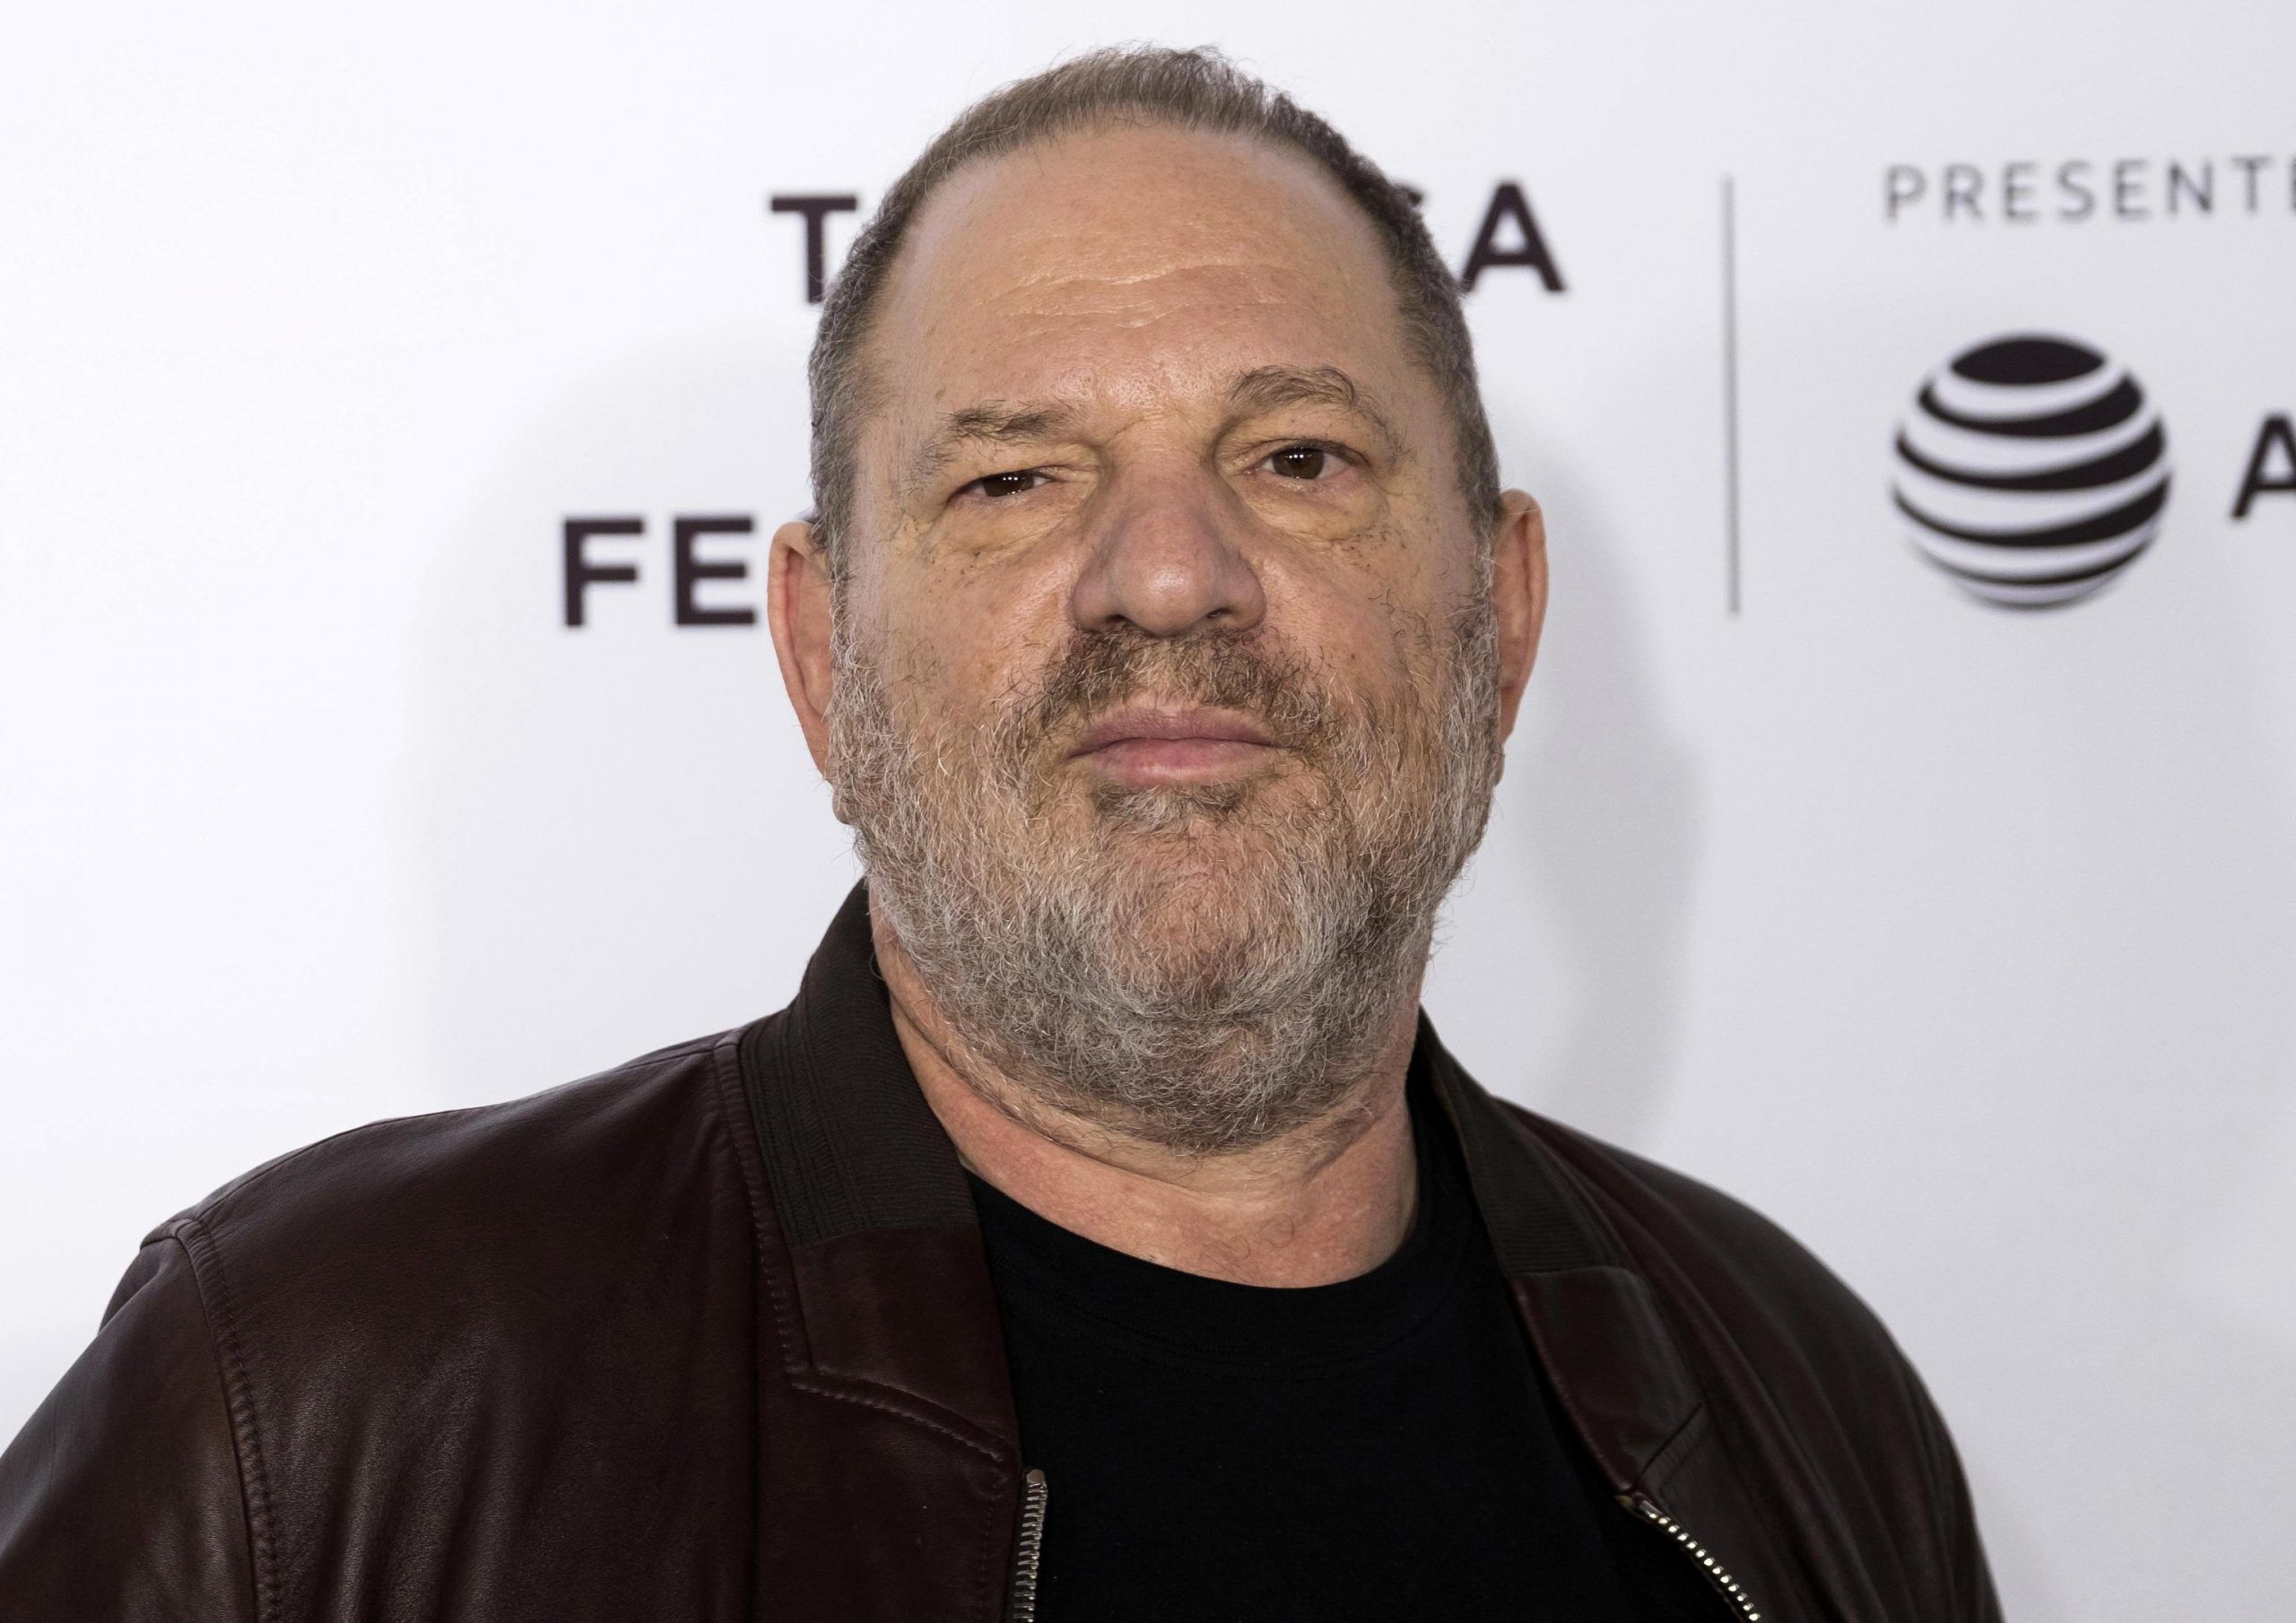 Caso Weinstein: il coraggio della denuncia o della negazione